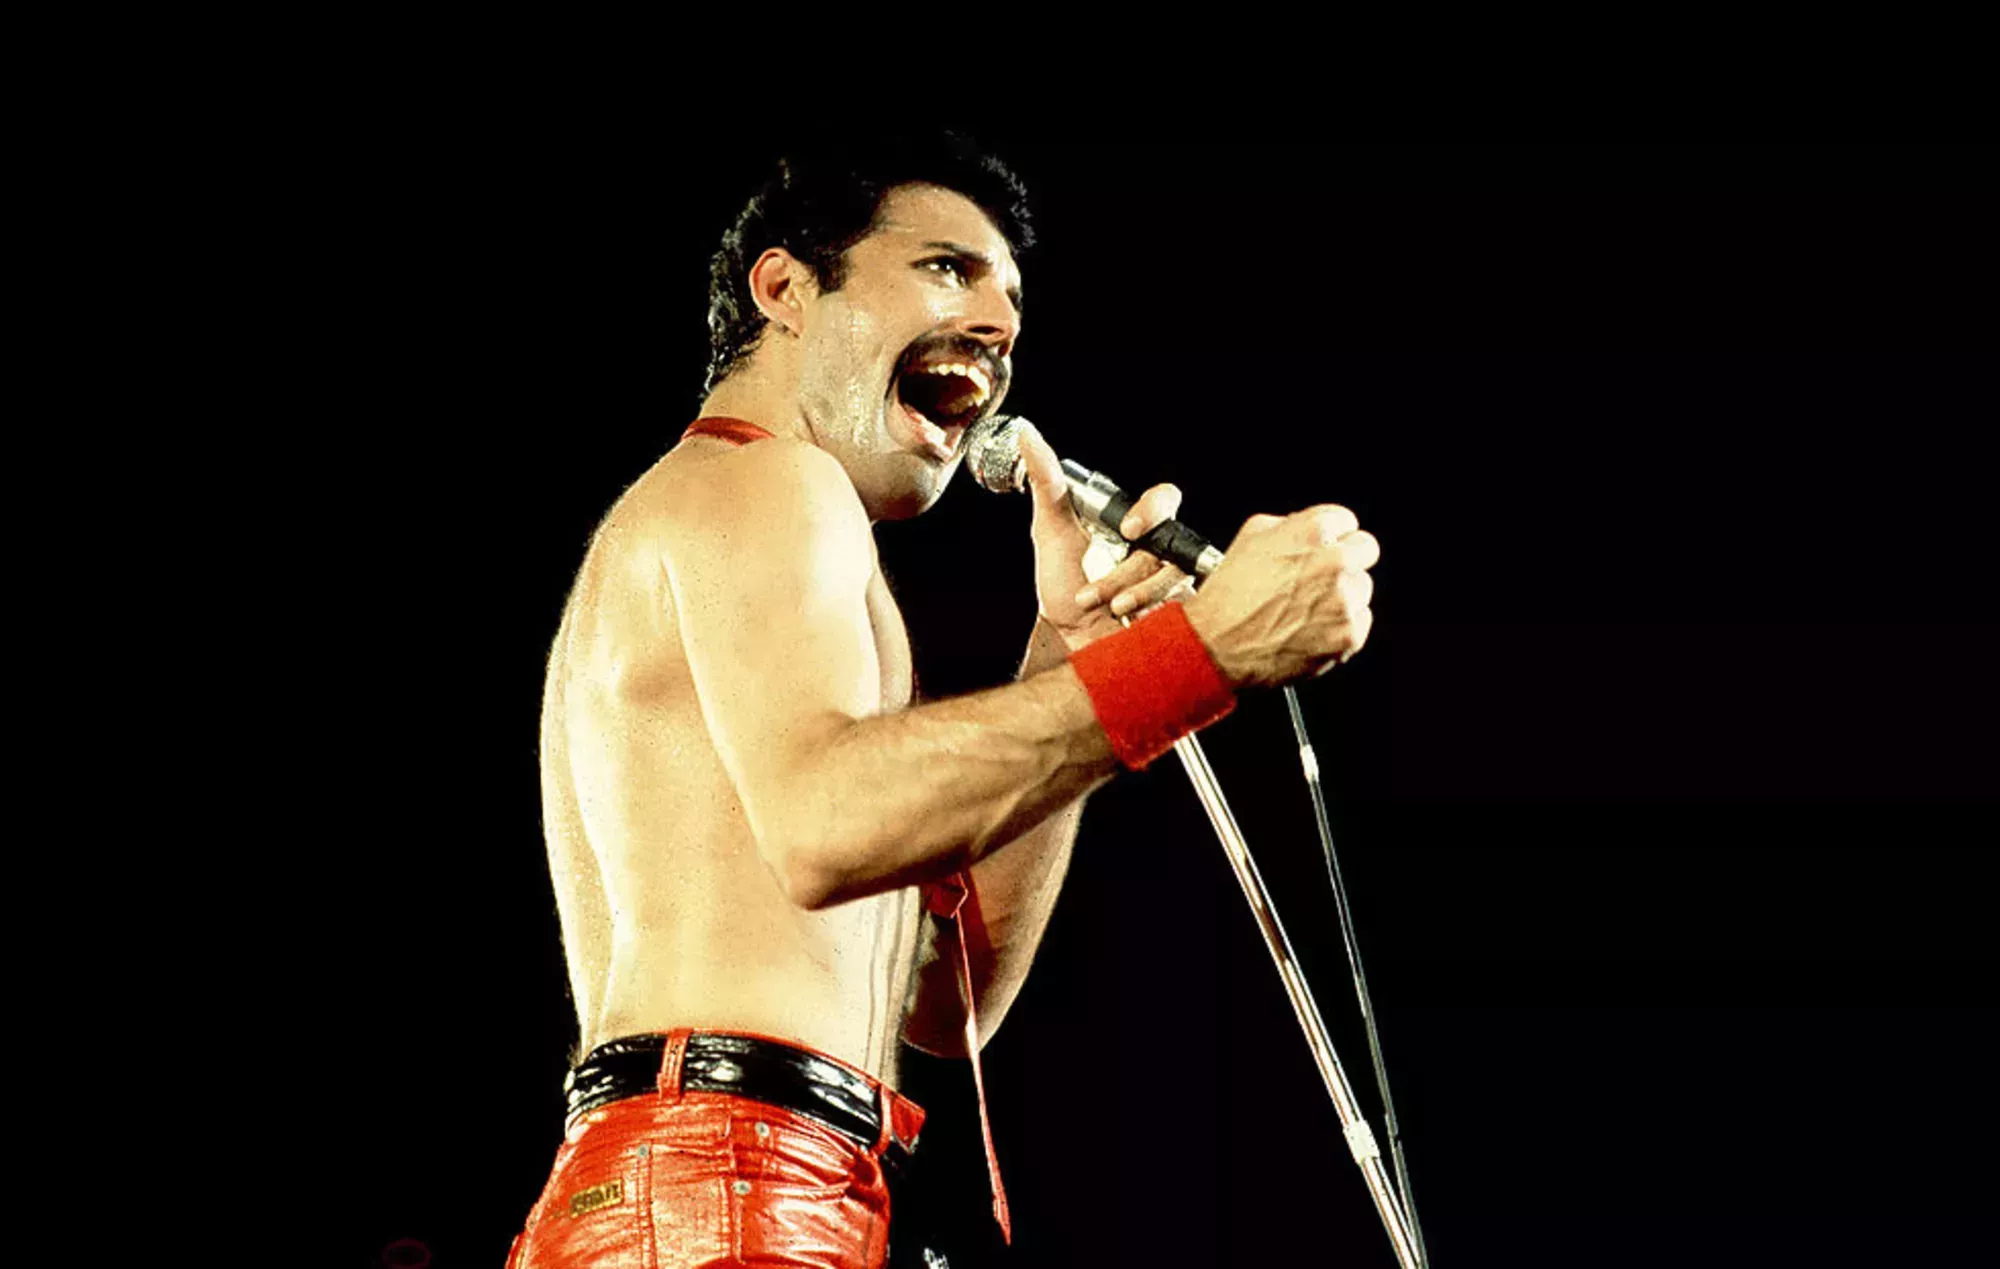 Los fans rinden homenaje a Freddie Mercury de Queen en el 75º cumpleaños del fallecido cantante